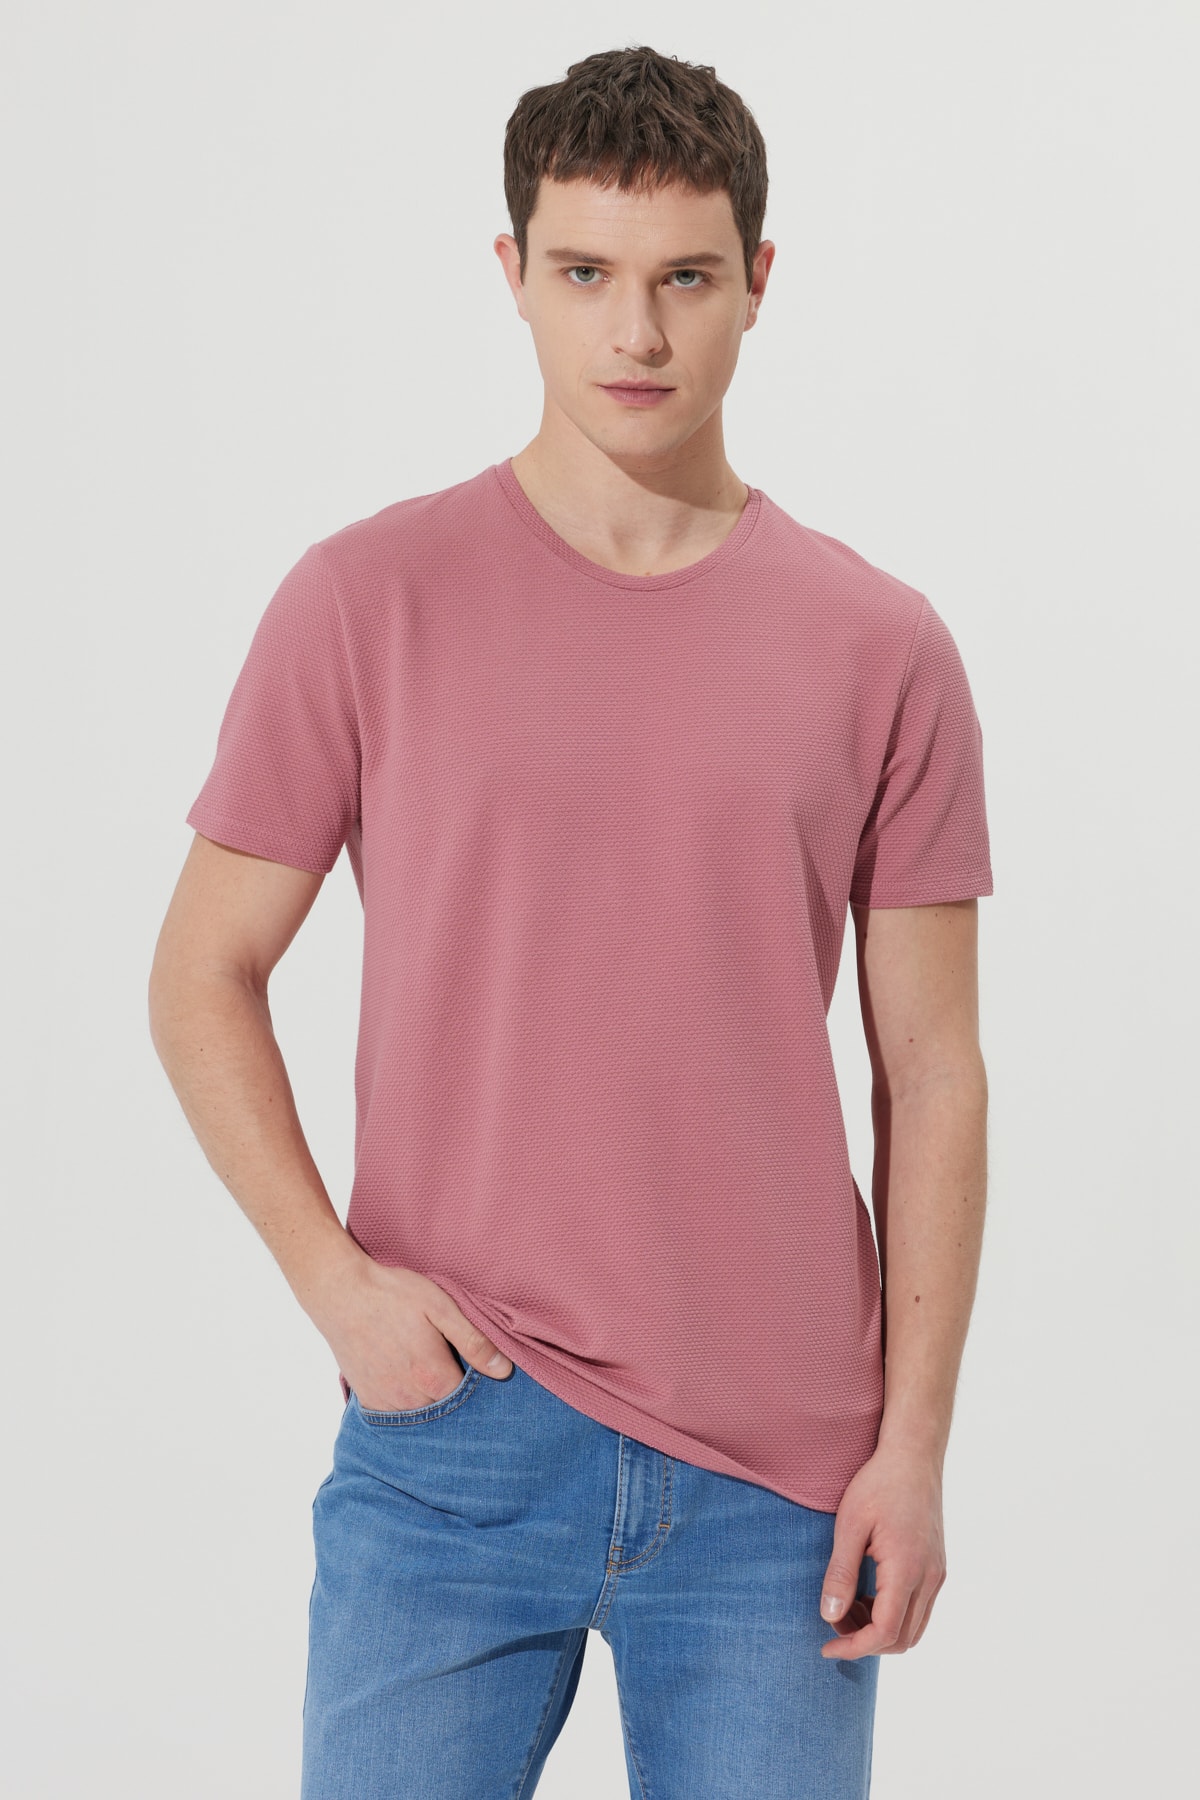 Levně ALTINYILDIZ CLASSICS Pánské suché růžové tričko Slim Fit Slim Fit s klasickým výstřihem s krátkým rukávem a měkkým omakem.